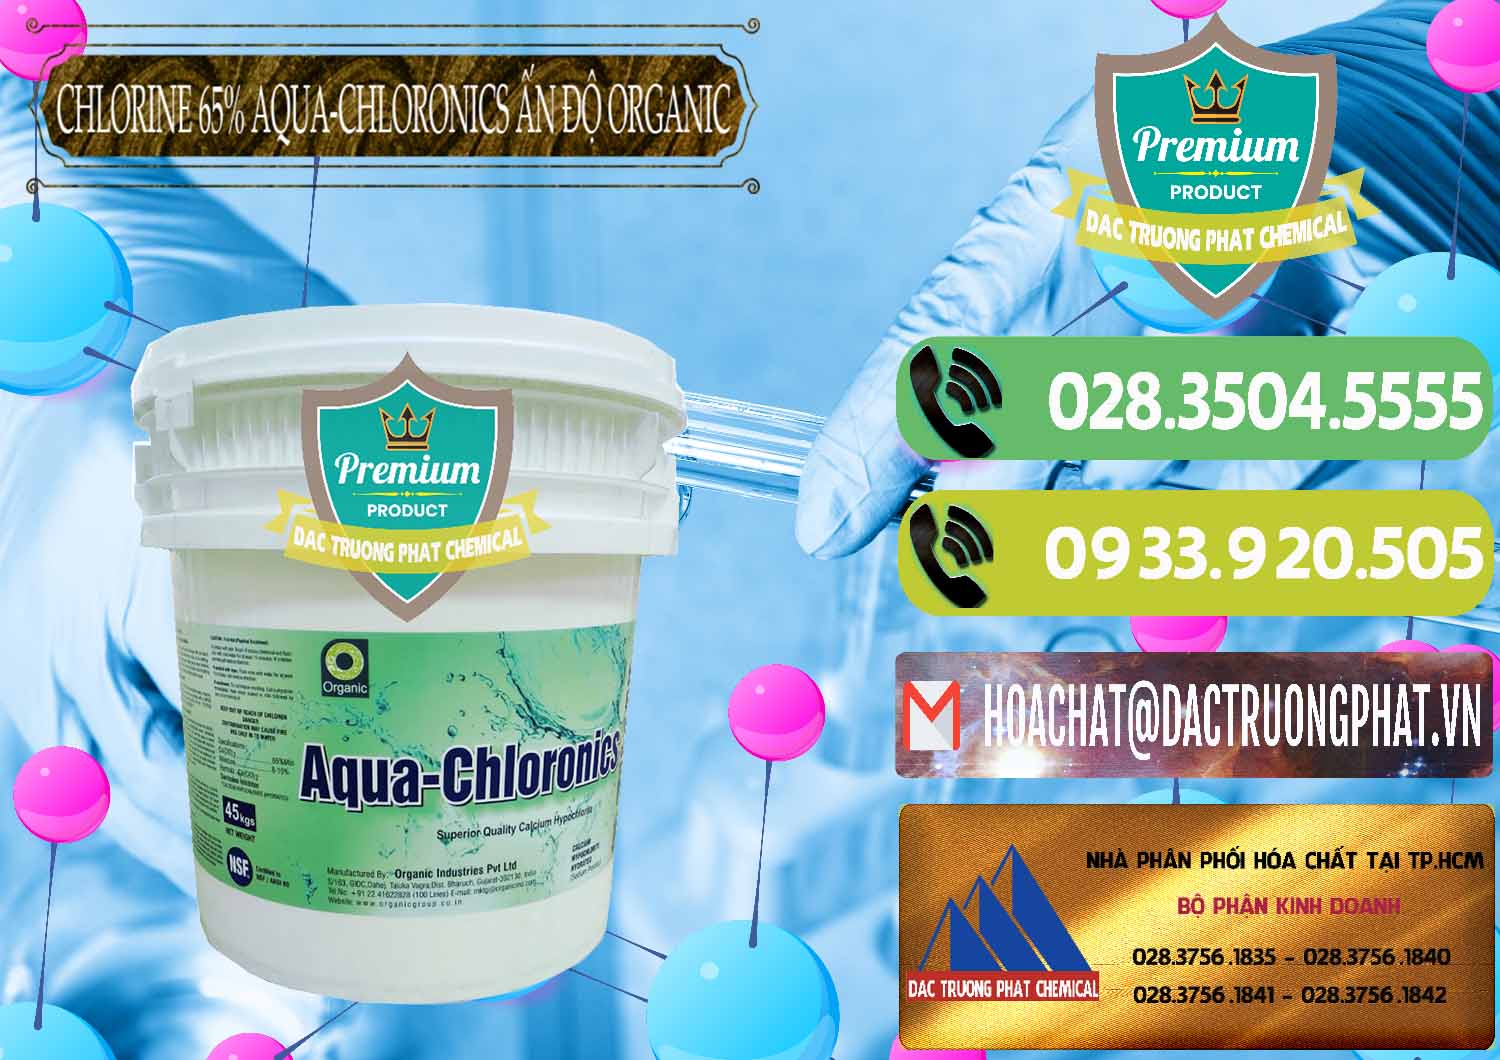 Nơi cung ứng & bán Chlorine – Clorin 65% Aqua-Chloronics Ấn Độ Organic India - 0210 - Nhà phân phối ( kinh doanh ) hóa chất tại TP.HCM - hoachatmientay.vn